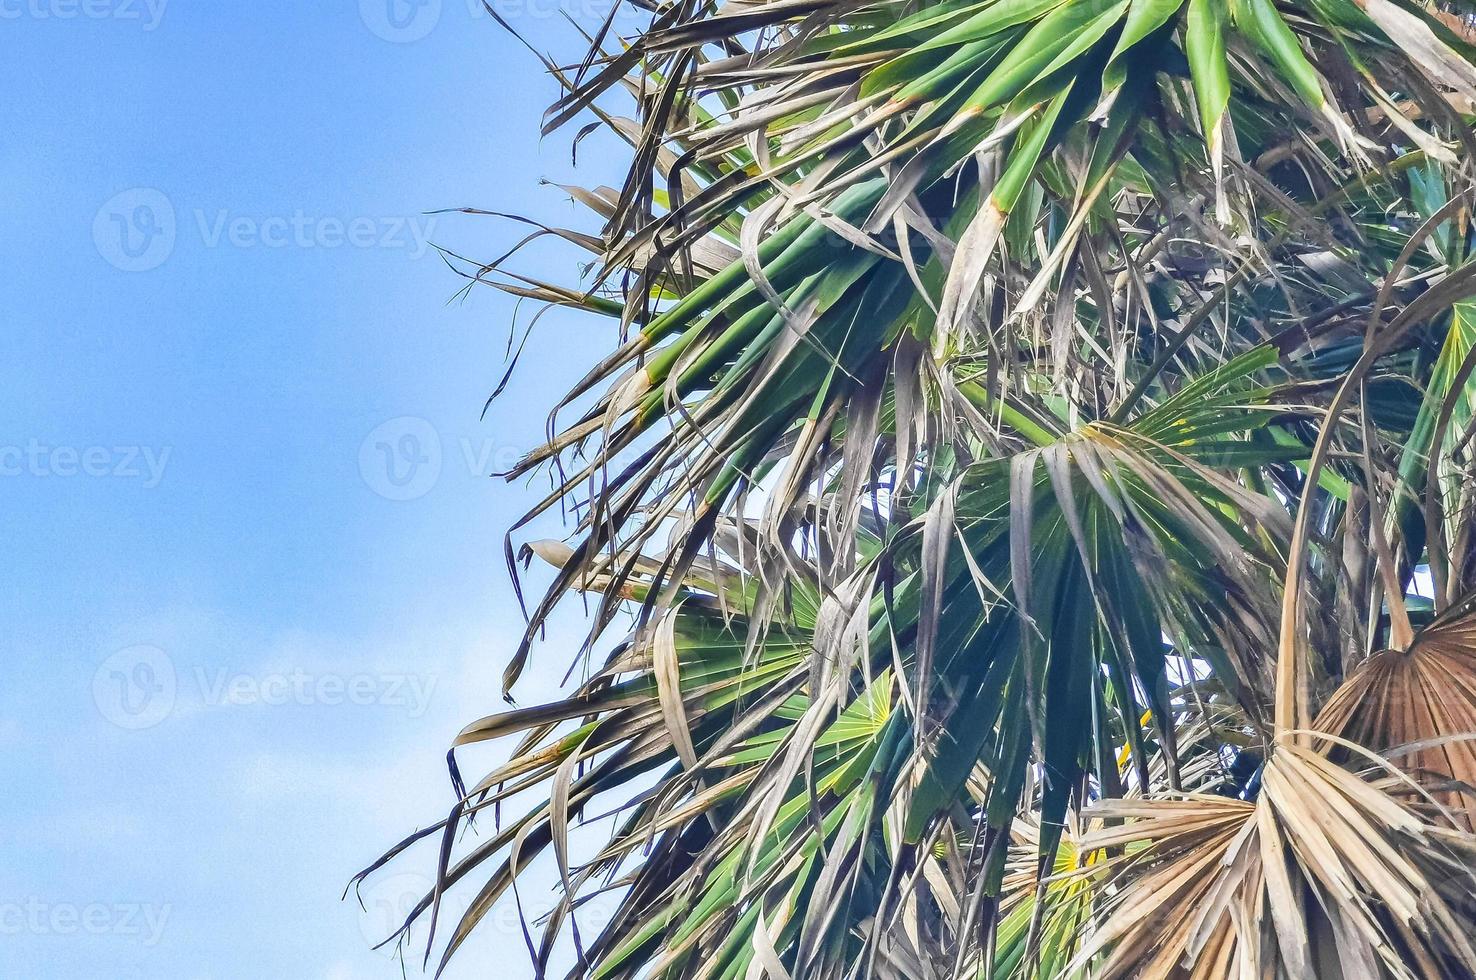 blauer himmel der tropischen palmenkokosnüsse in tulum mexiko. foto